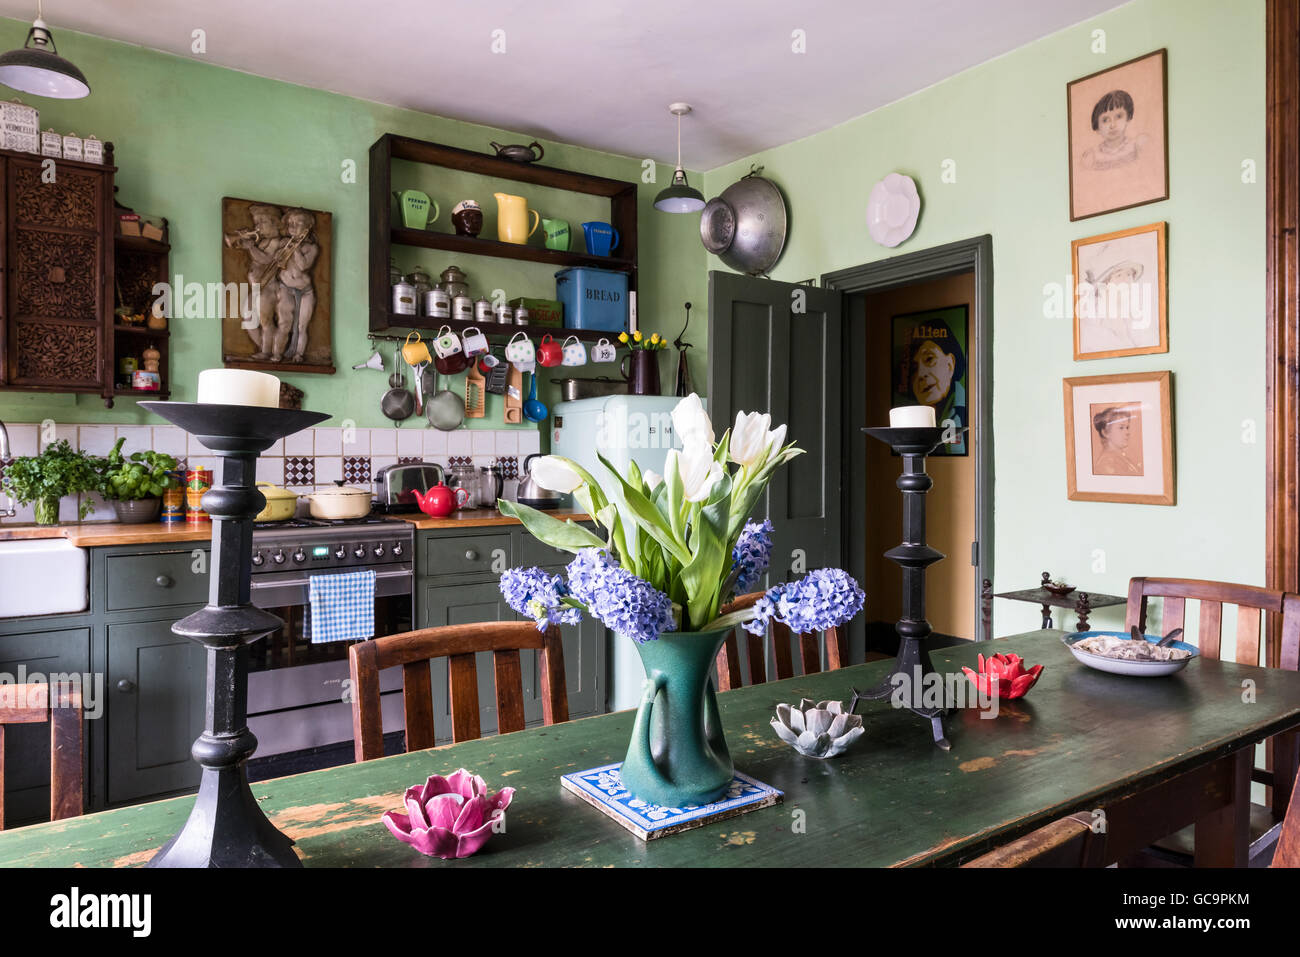 Couper les tulipes et les chandeliers sur la table de cuisine Nottinghill, London, UK Banque D'Images